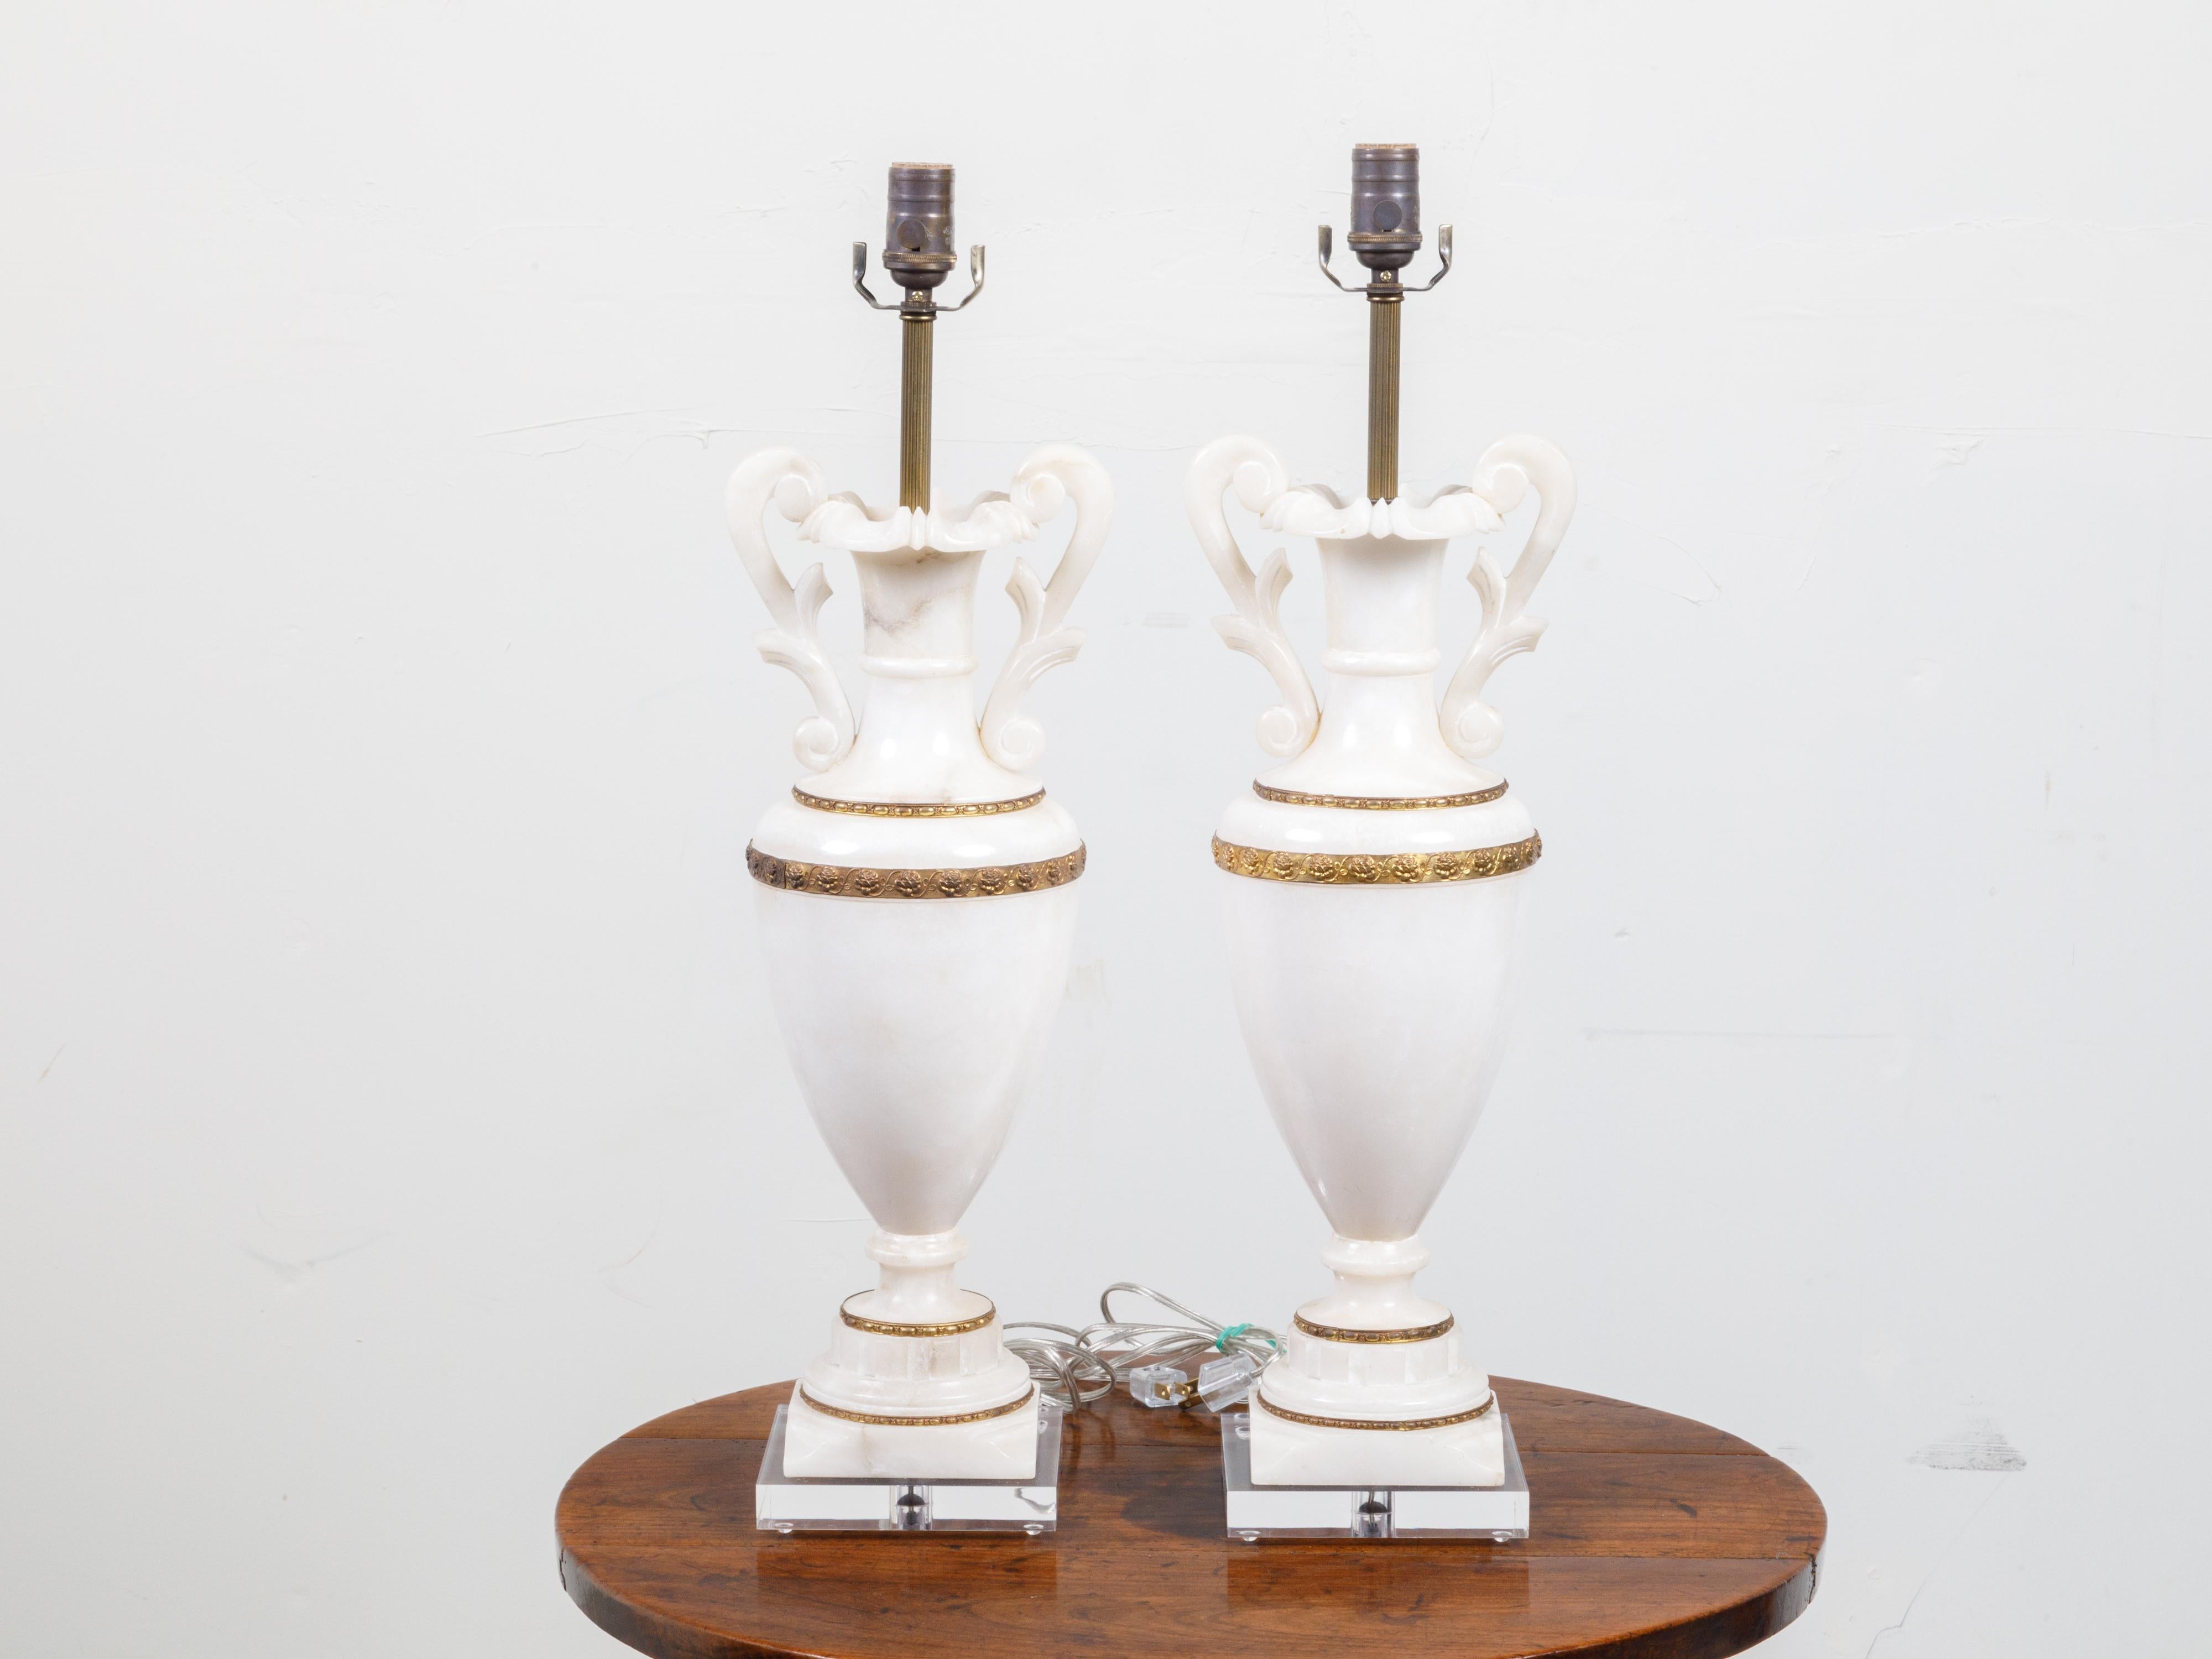 Paire de lampes de table en forme de vase en marbre et bronze du début du 20e siècle, avec volutes et bases en lucite. Créée en France durant le premier quart du 20e siècle, cette paire de lampes de table, câblée pour les États-Unis, présente un